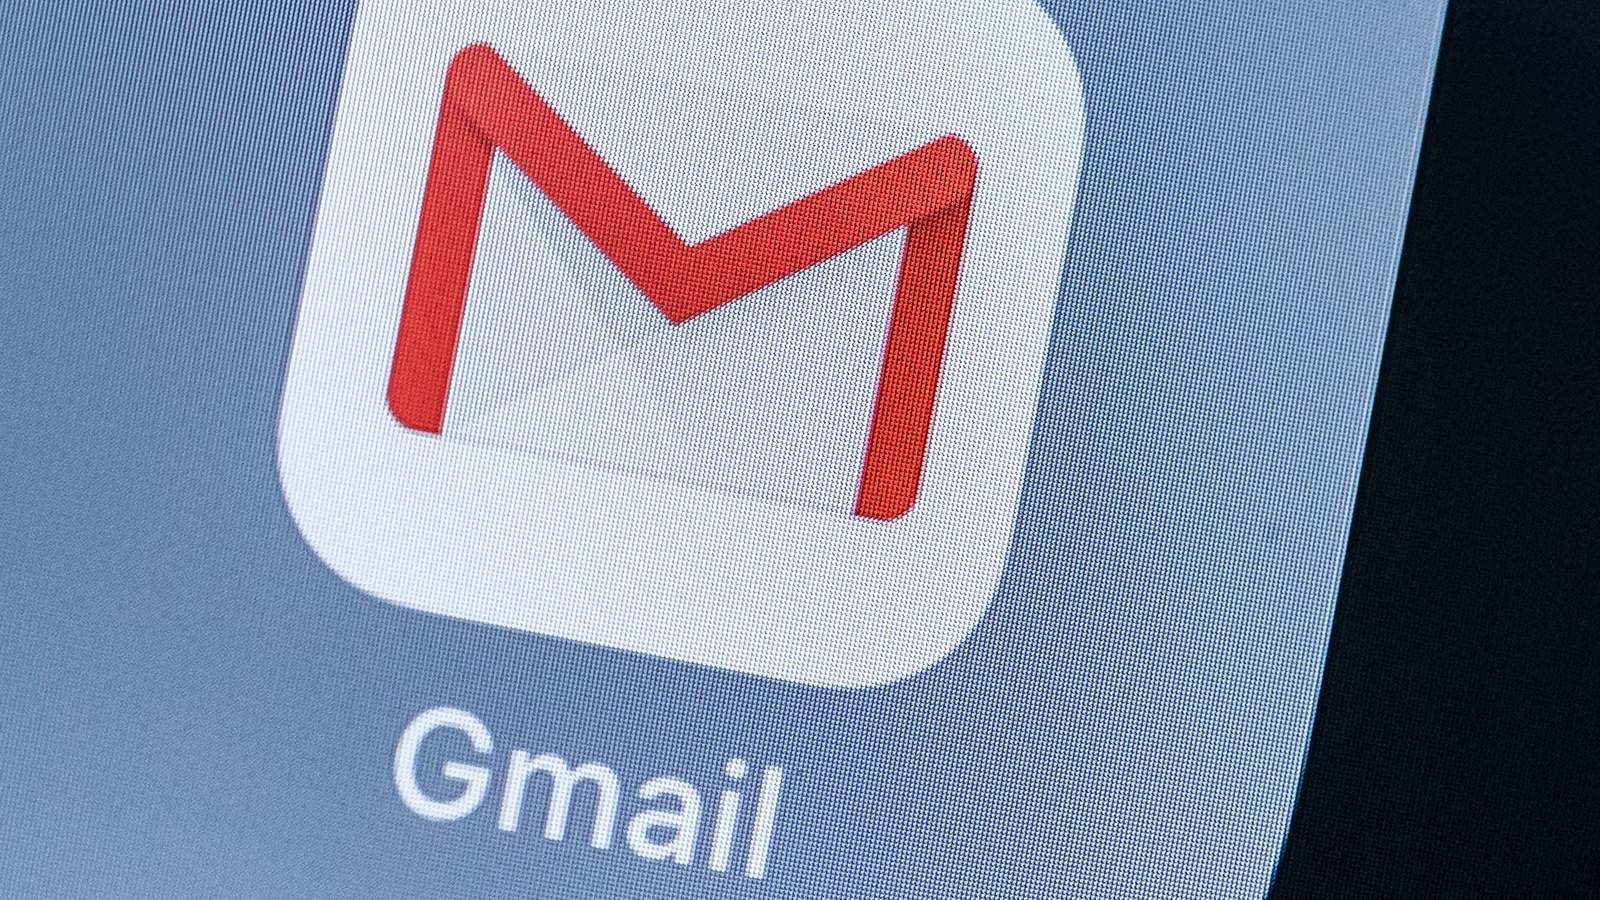 В России пожаловались, что Gmail заблокировал рабочую почту Госдумы